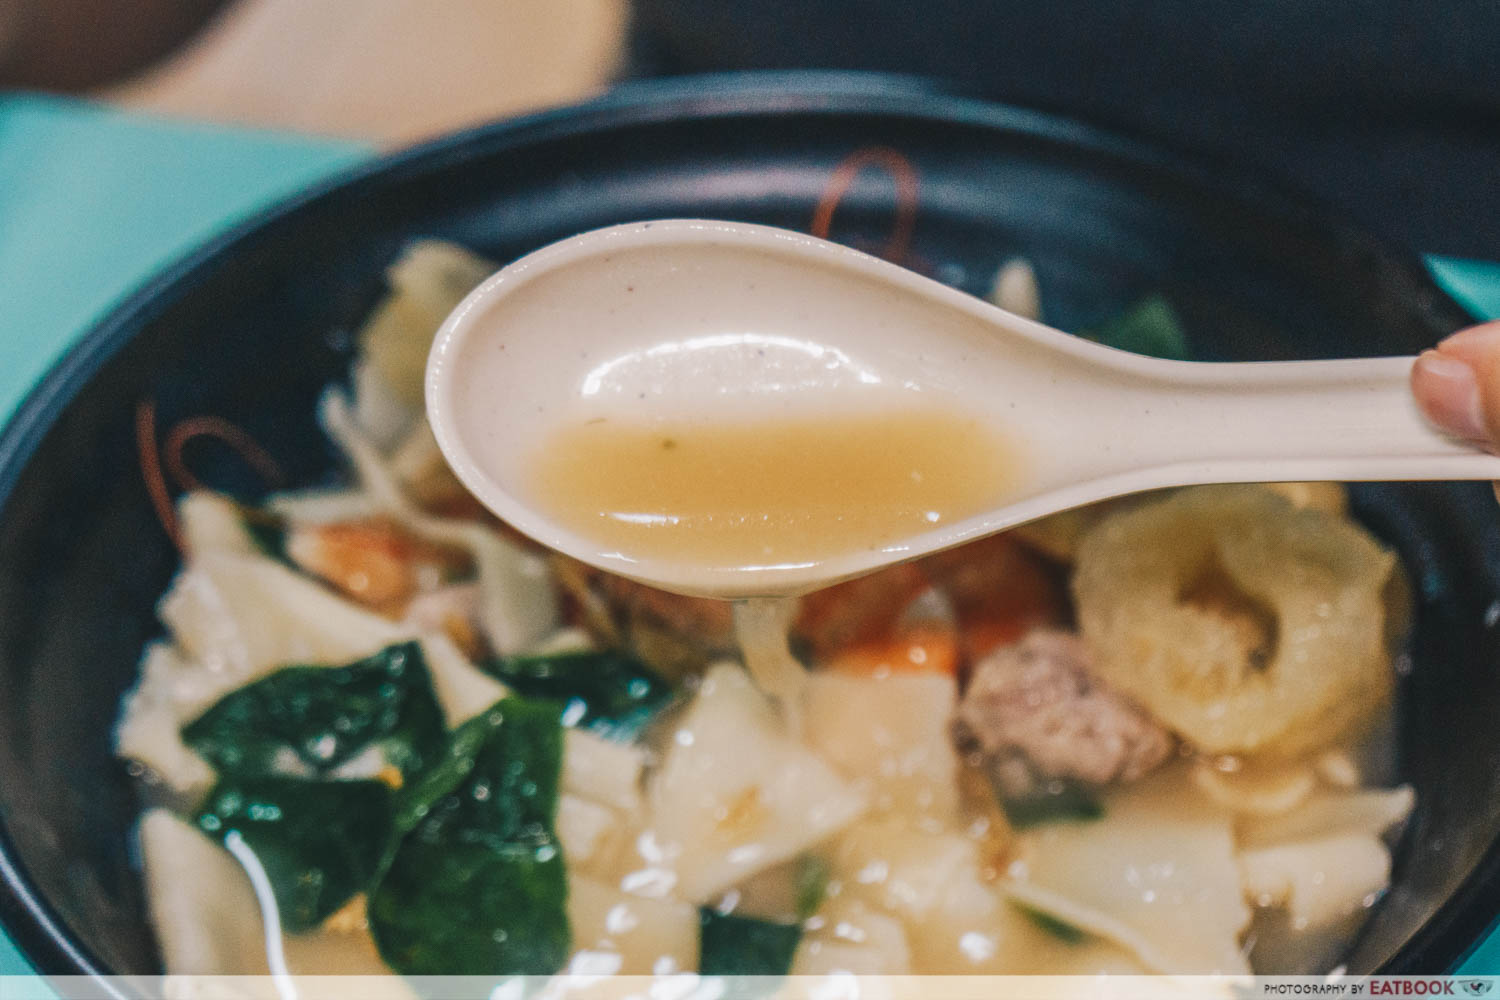 mian zhuang soup